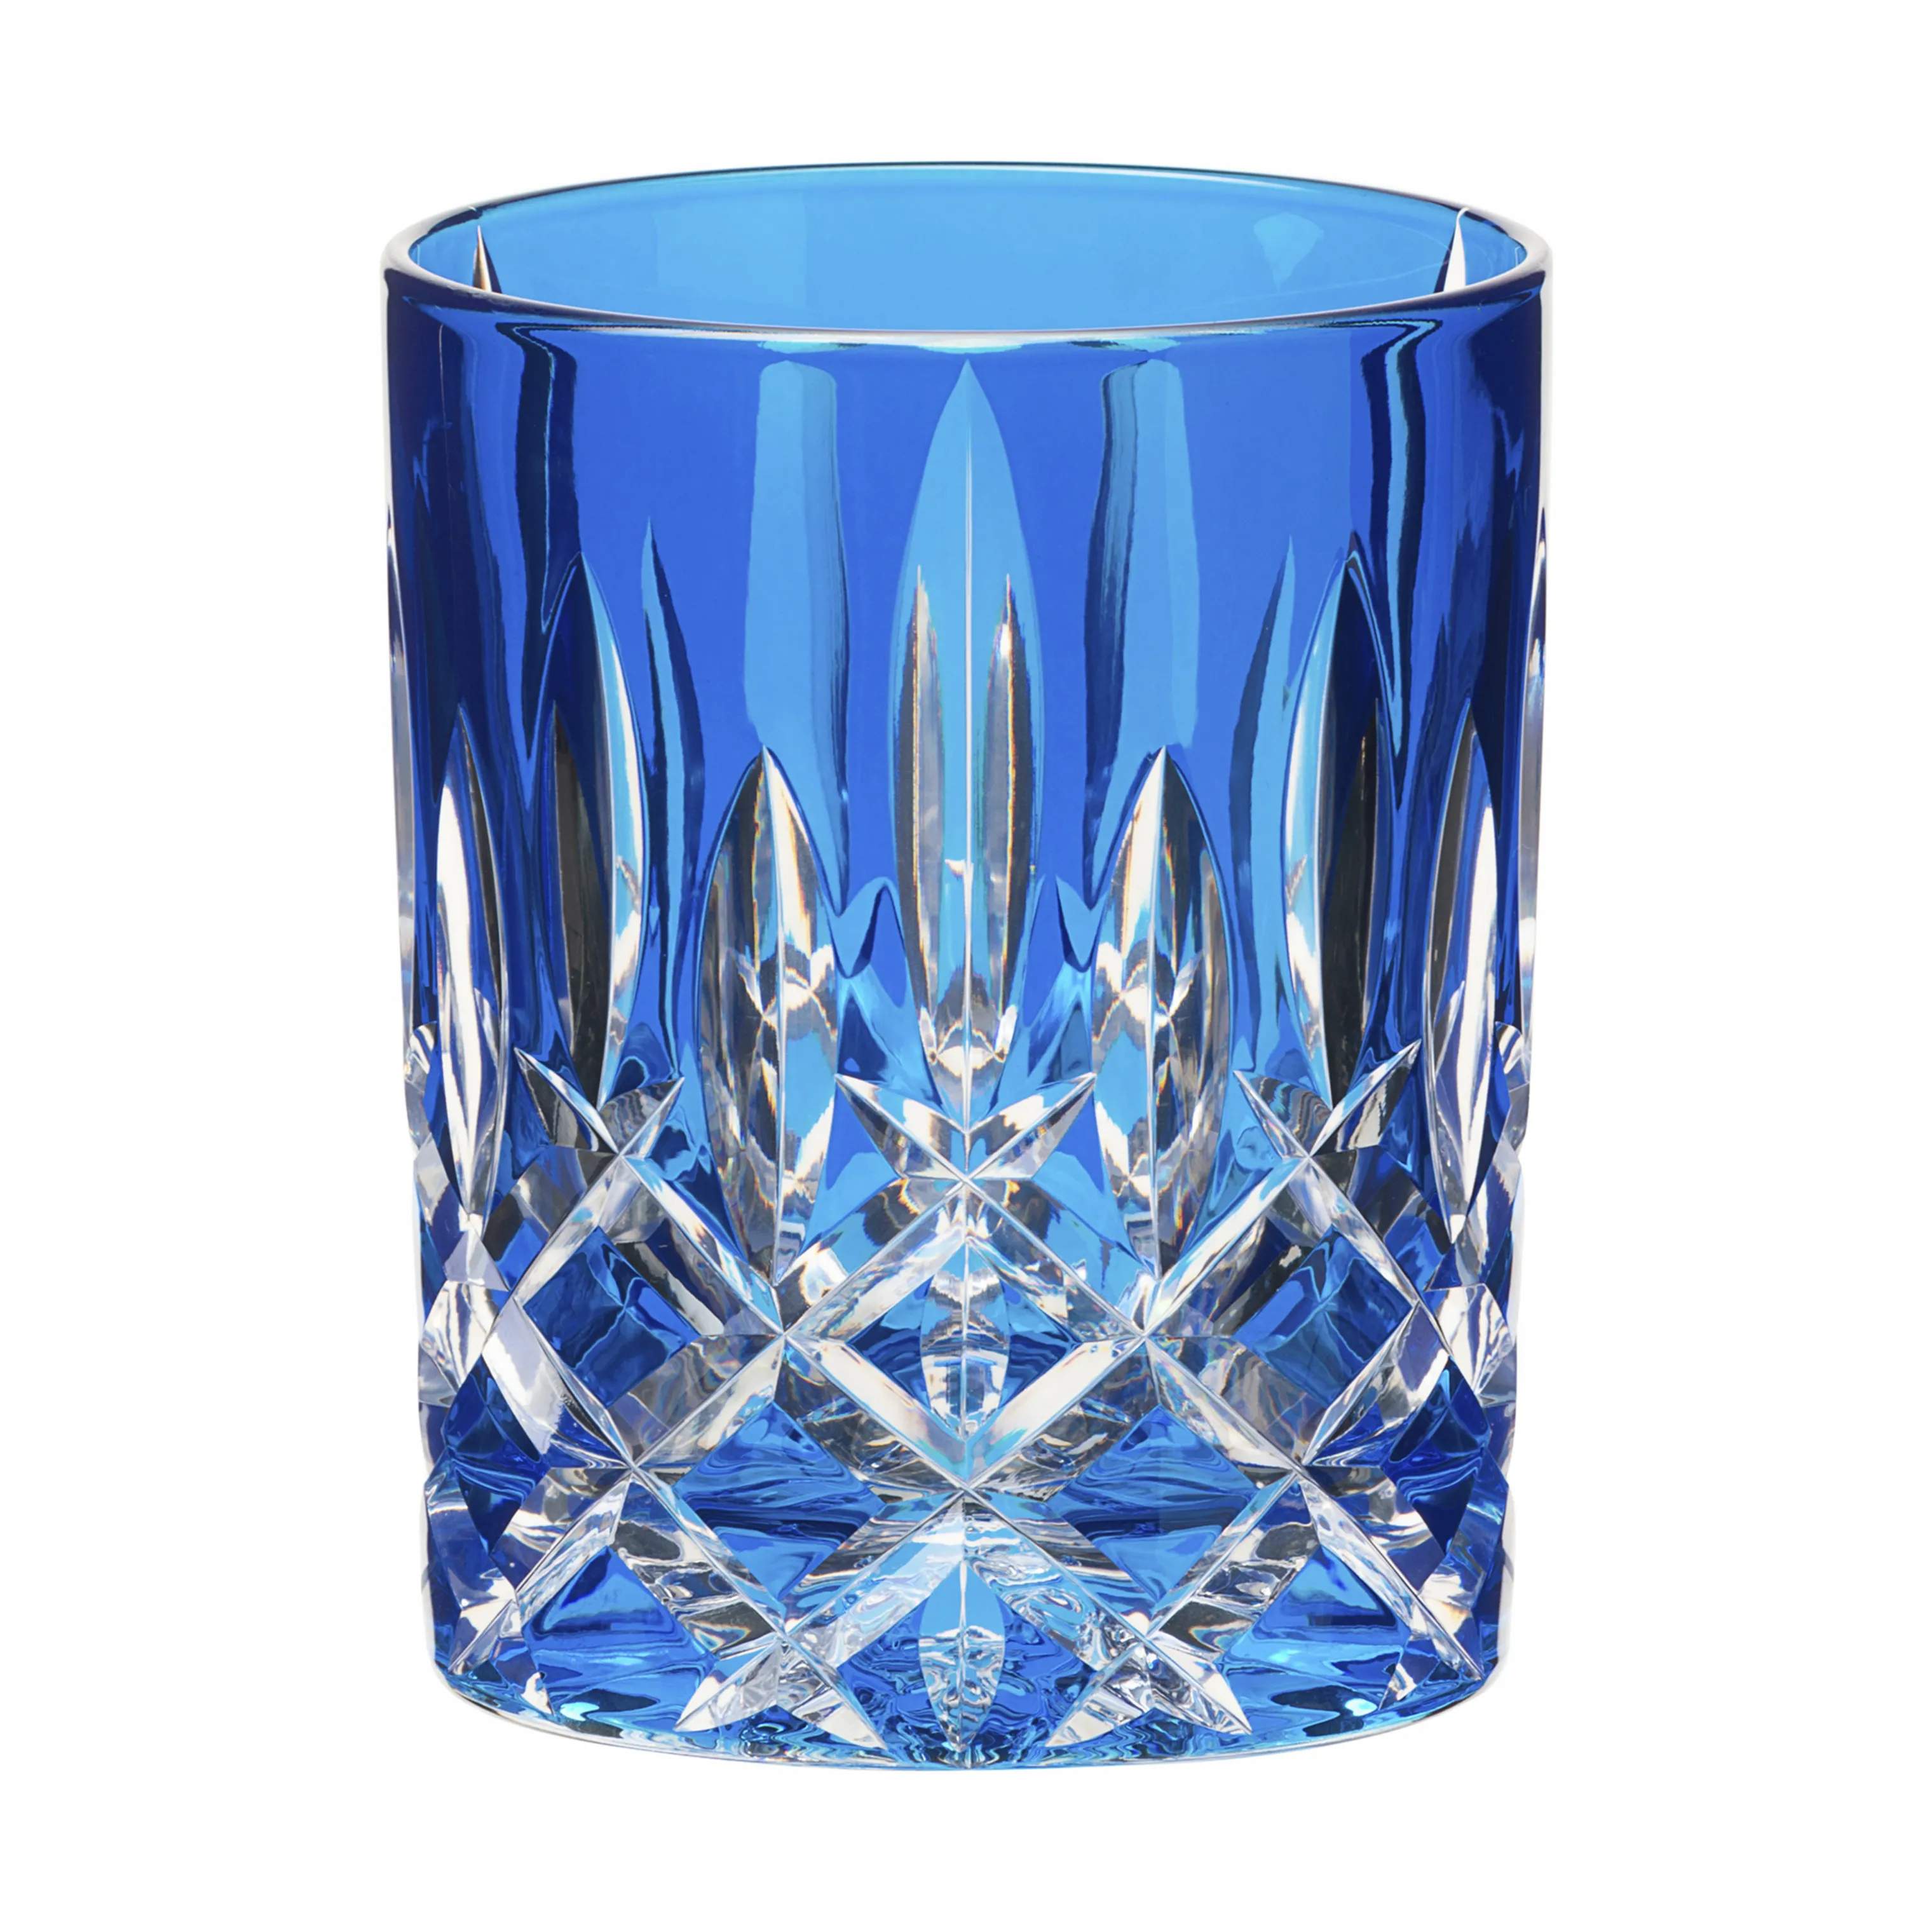 Laudon Vandglas, mørkeblå, large